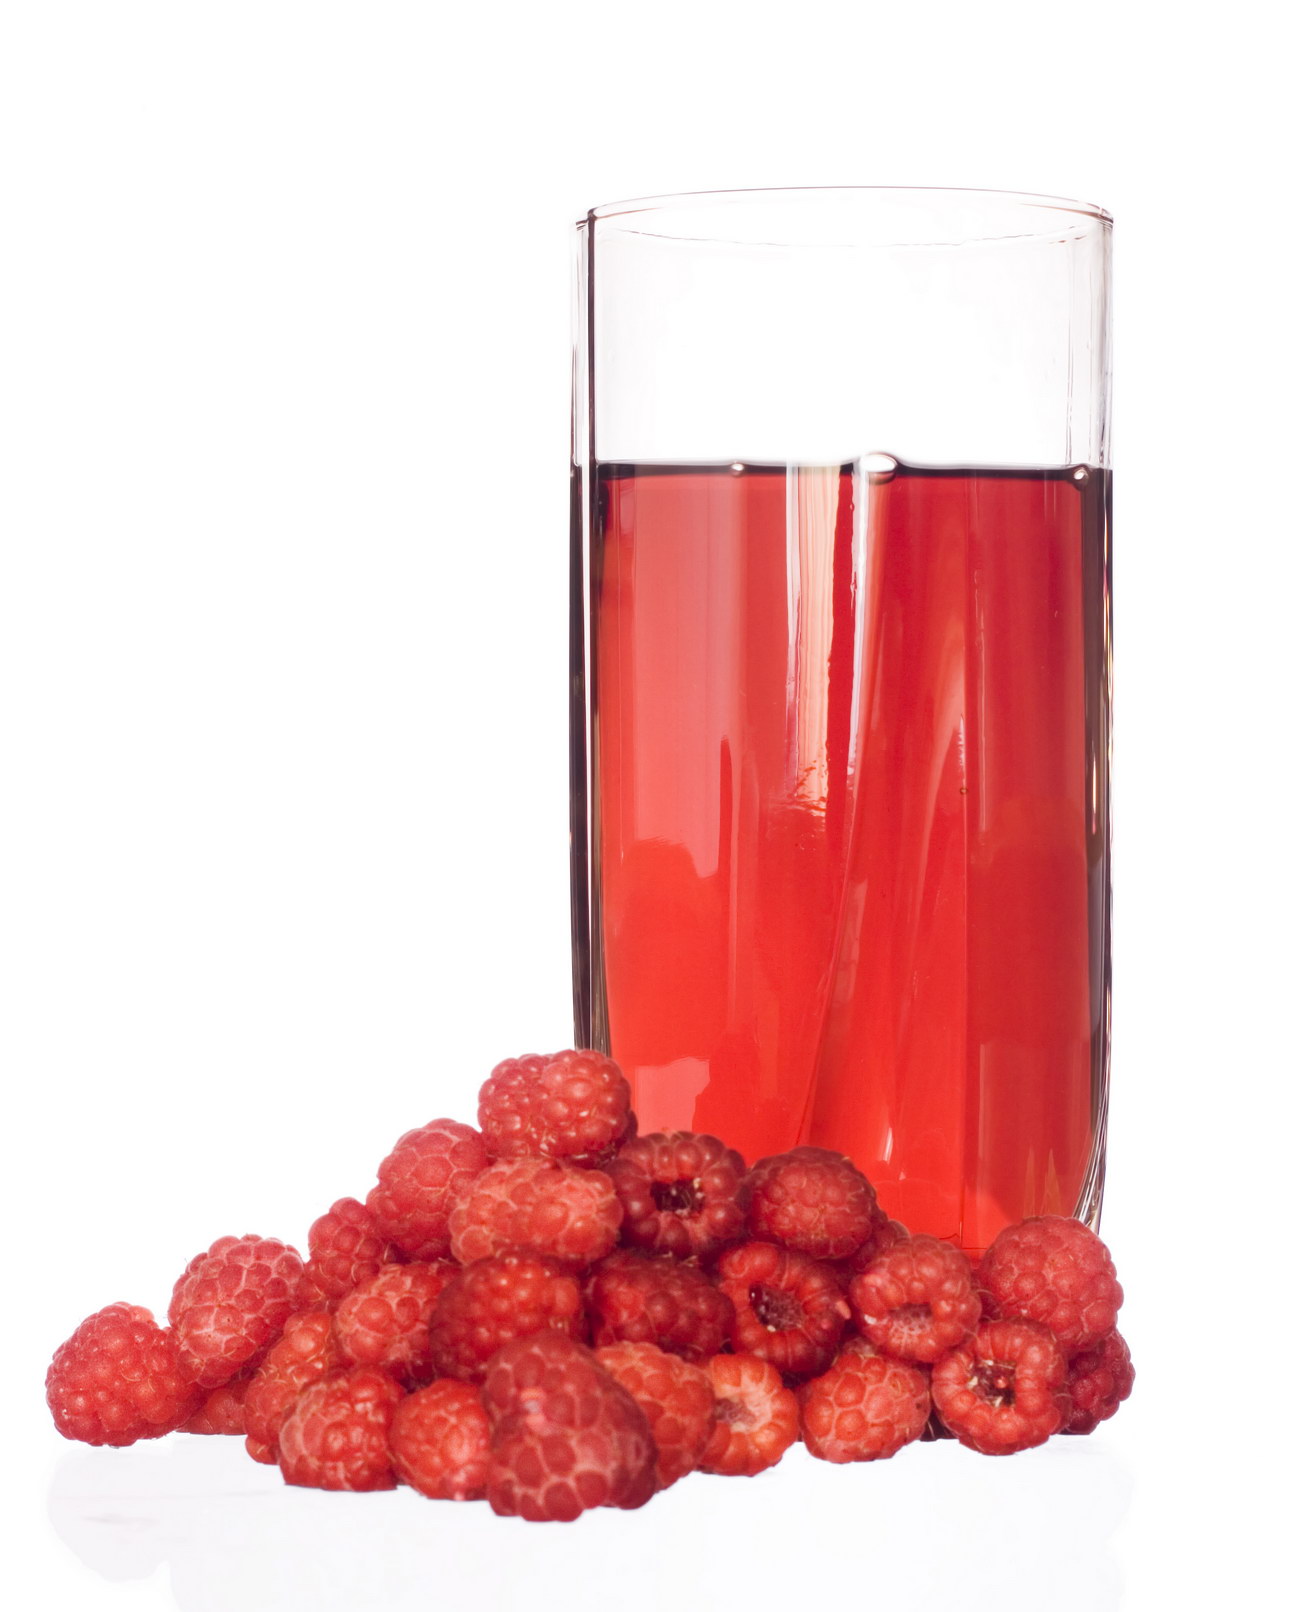 Raspberry juice photo